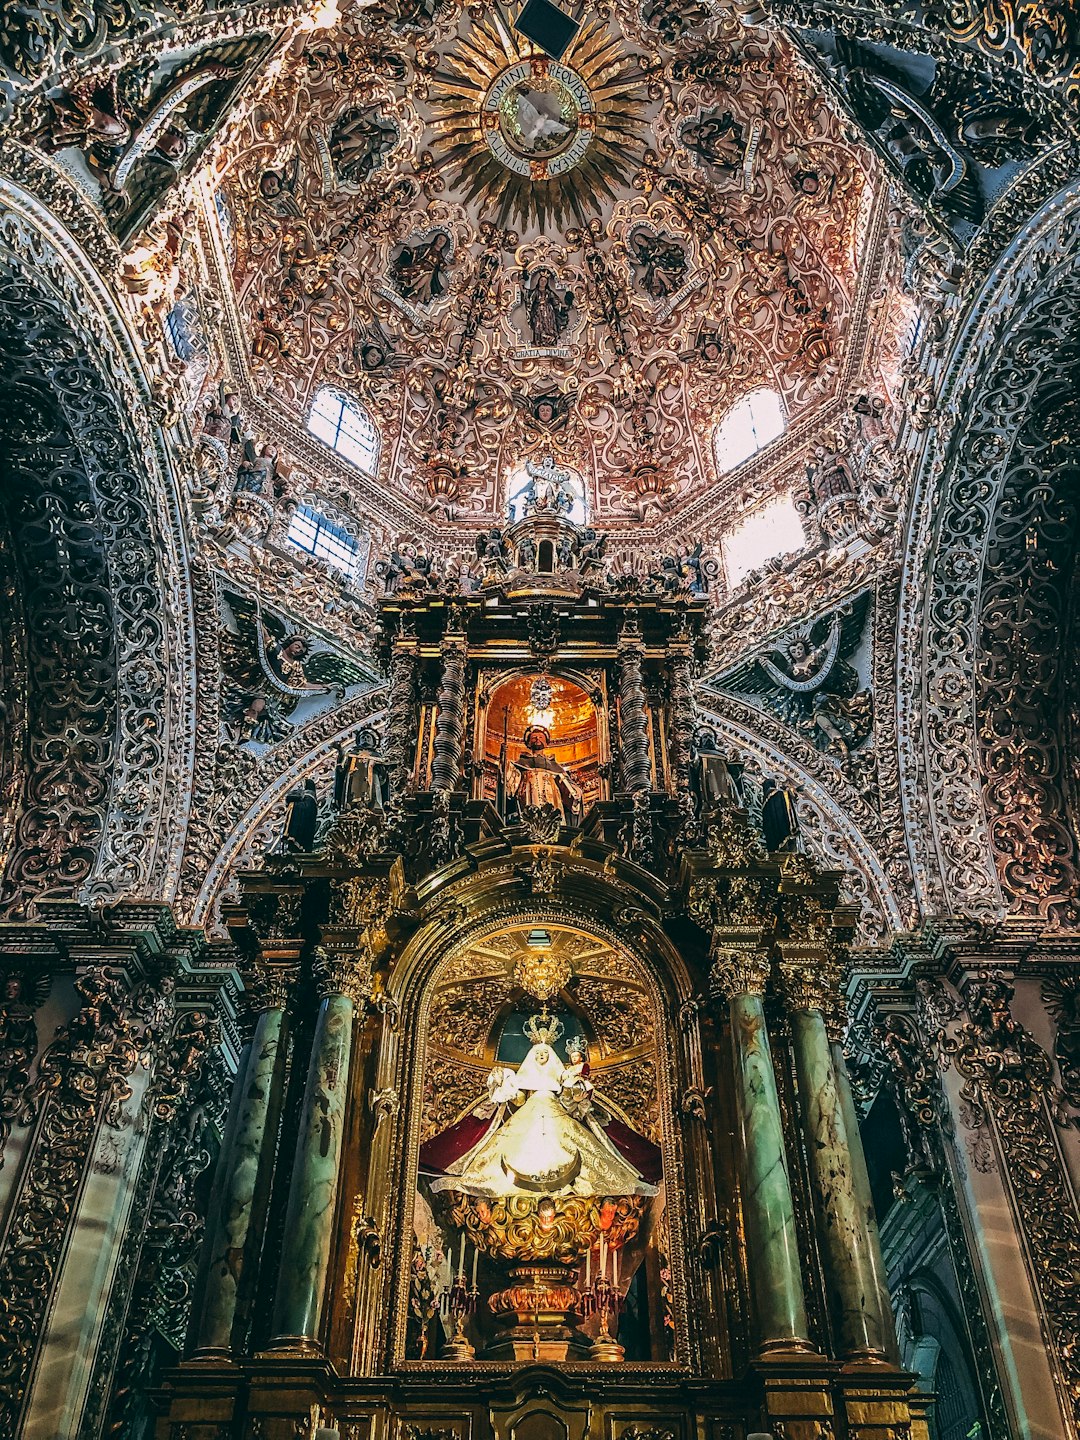 Santo Domingo Church in Mexico